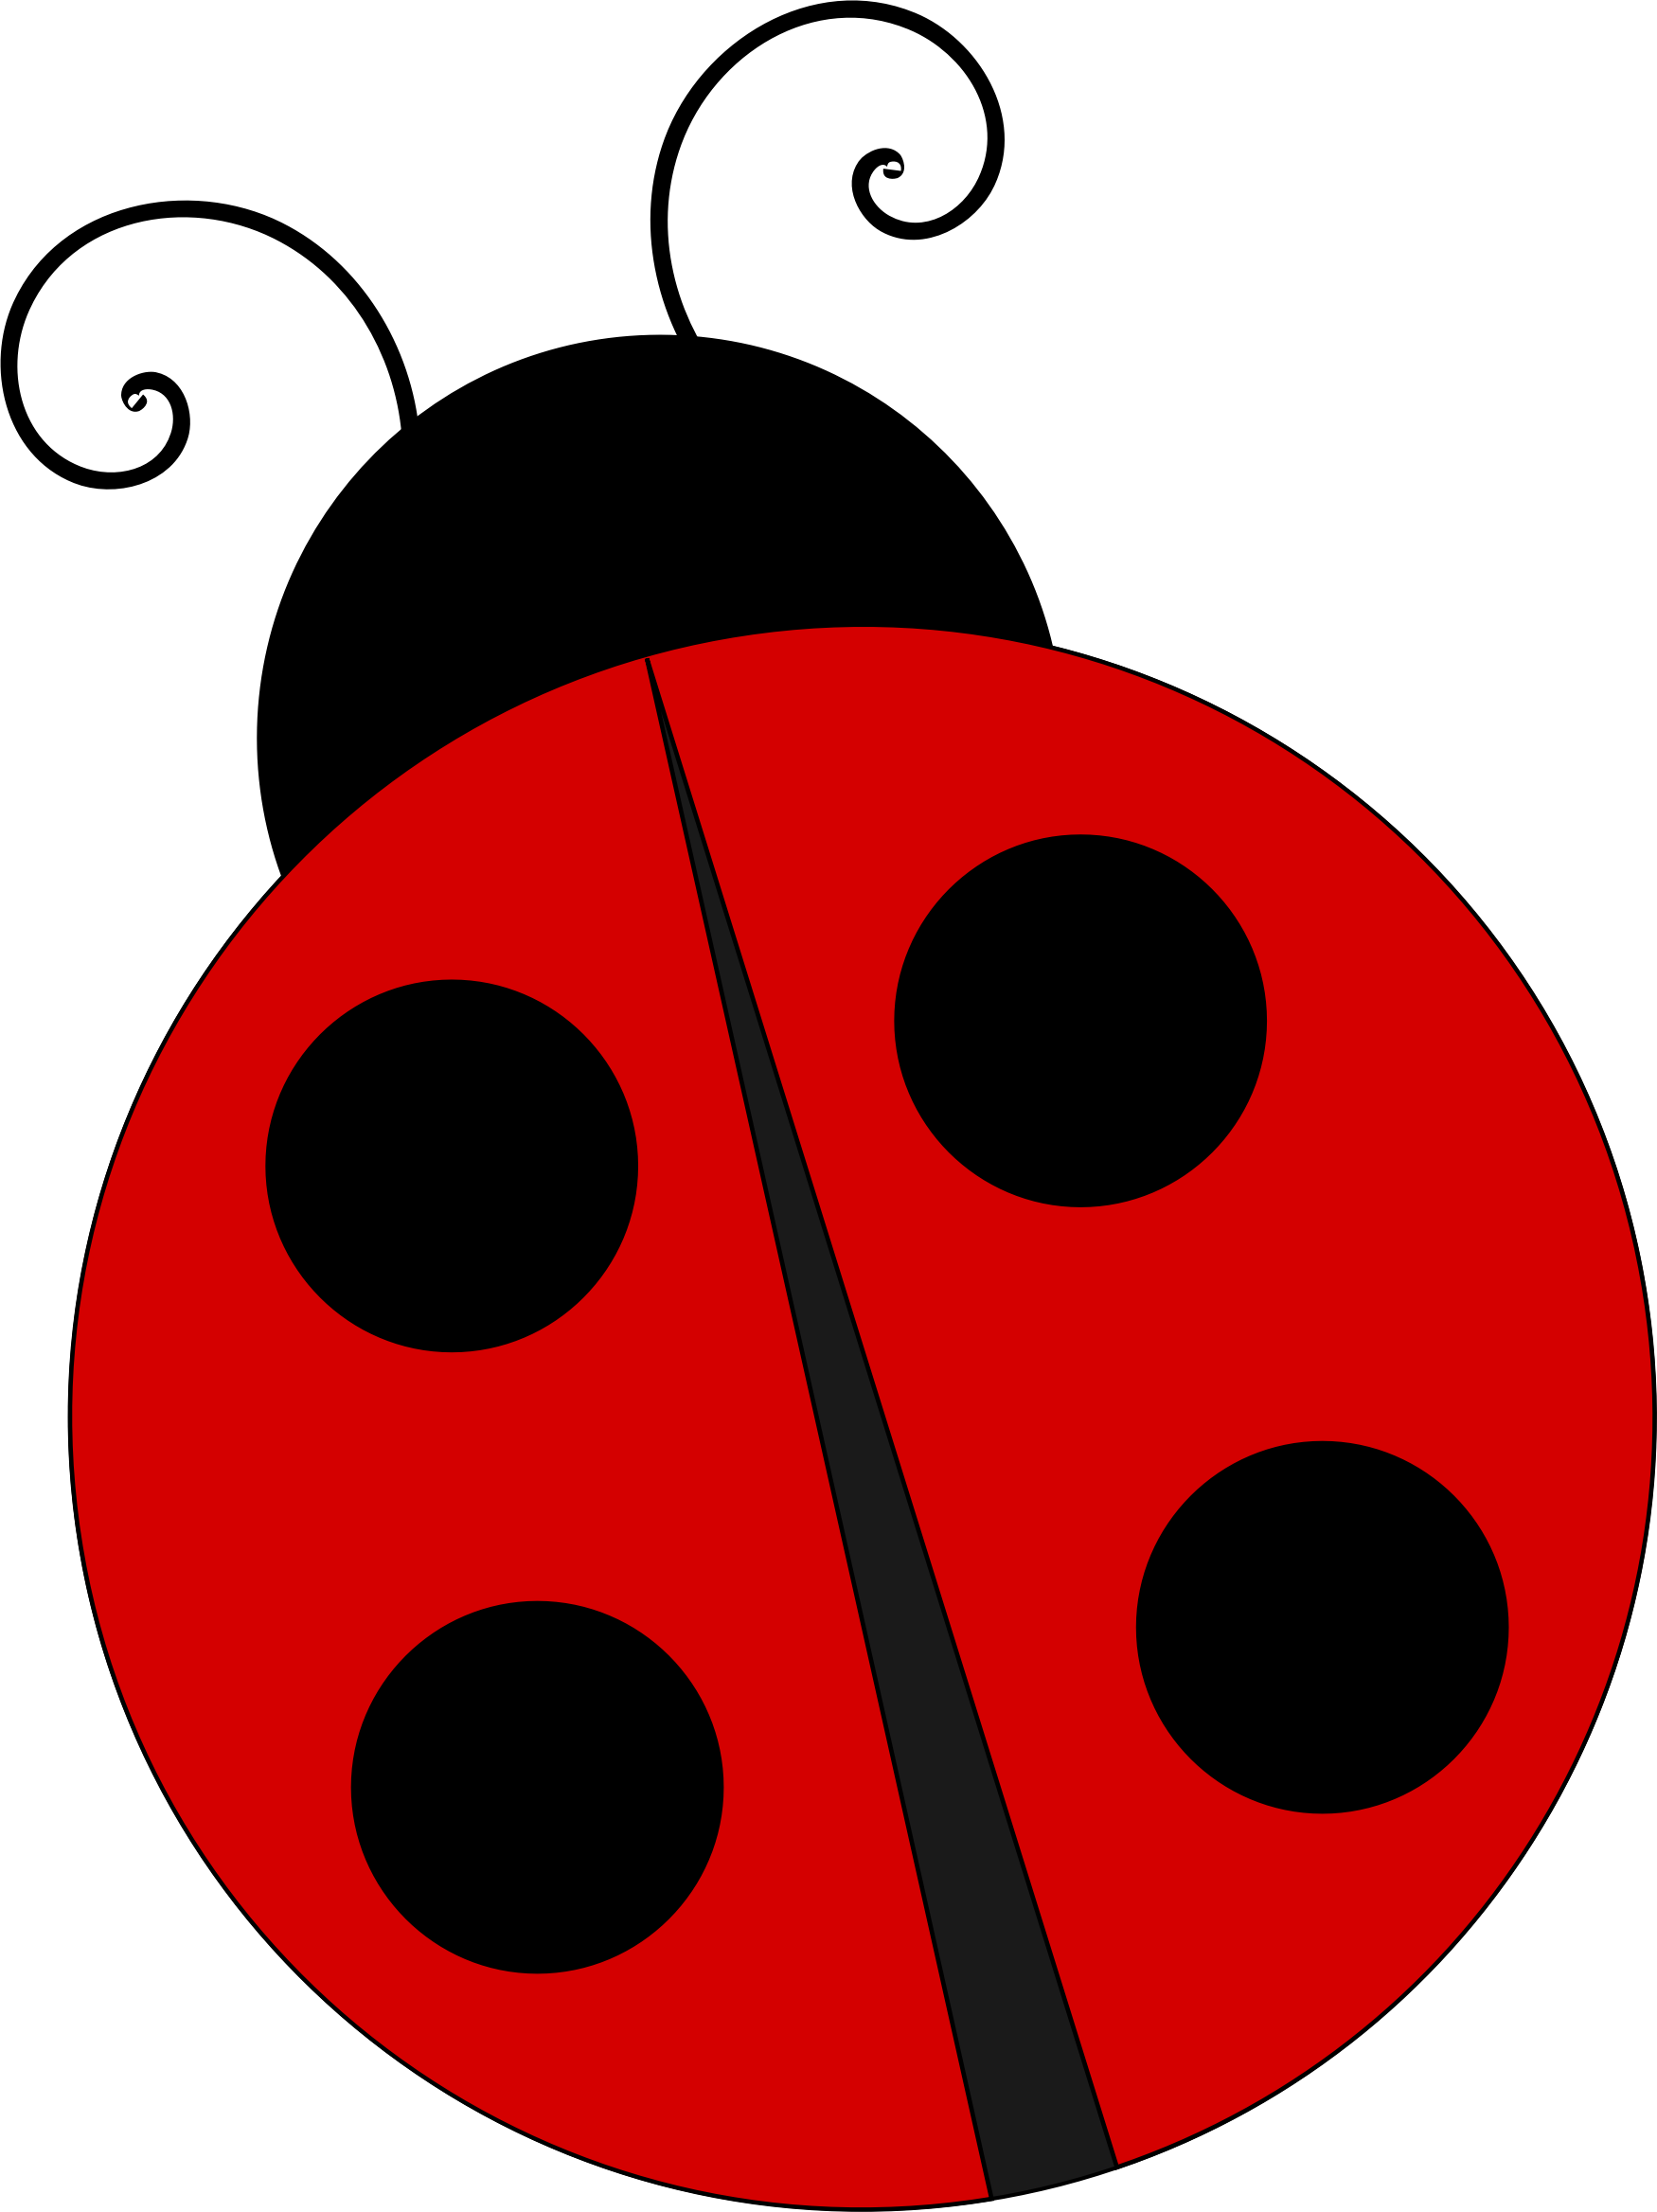 Ladybug Clipart Free - Tumundografico